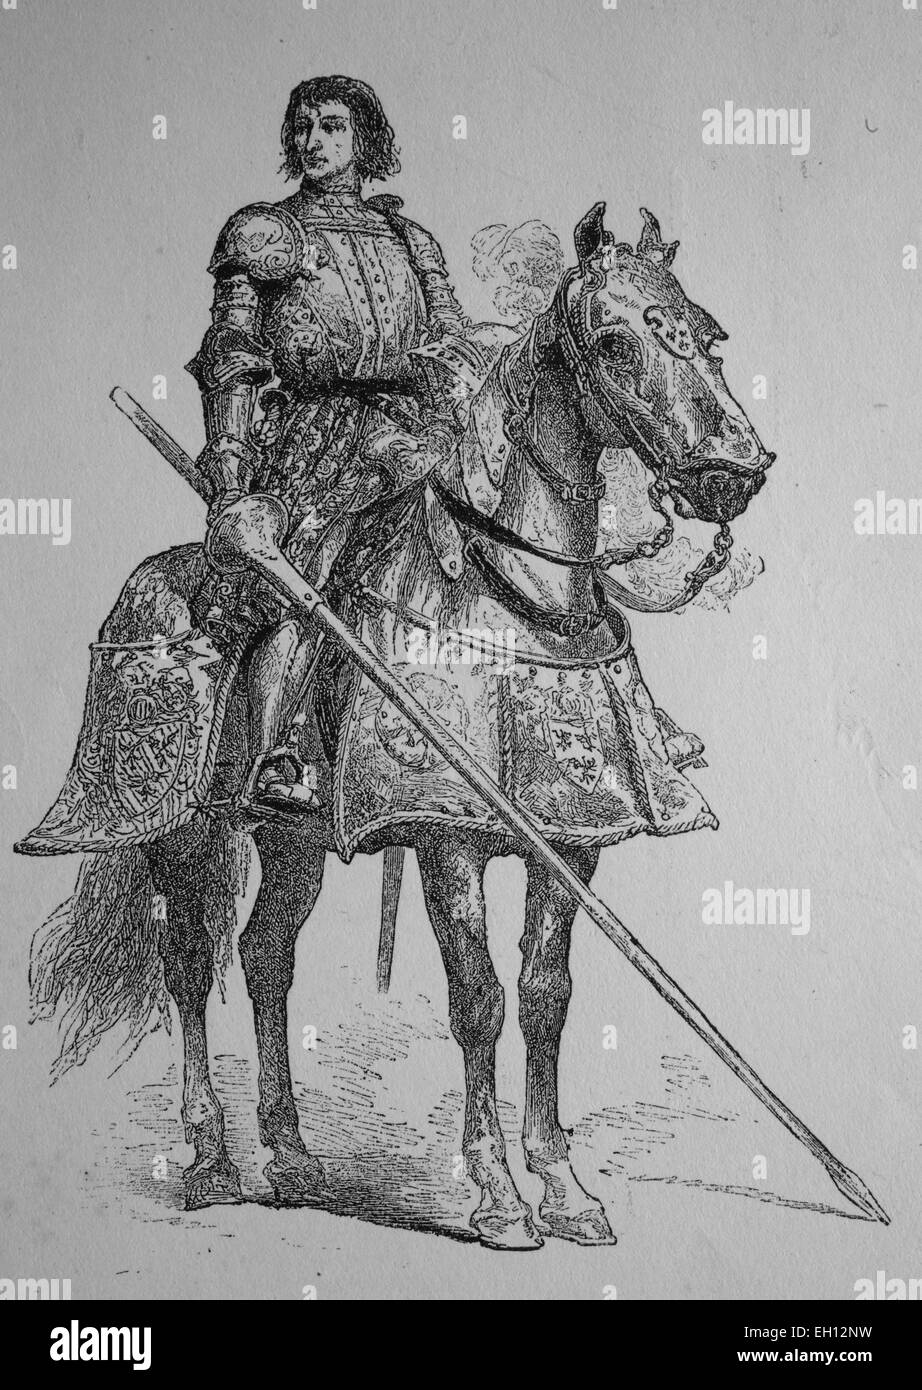 Pierre Terrail LeVieux, seigneur de Bayard, 1476 - 1524, connu comme le chevalier sans peur et sans reproches, un commandant français, gravure sur bois de 1880 Banque D'Images